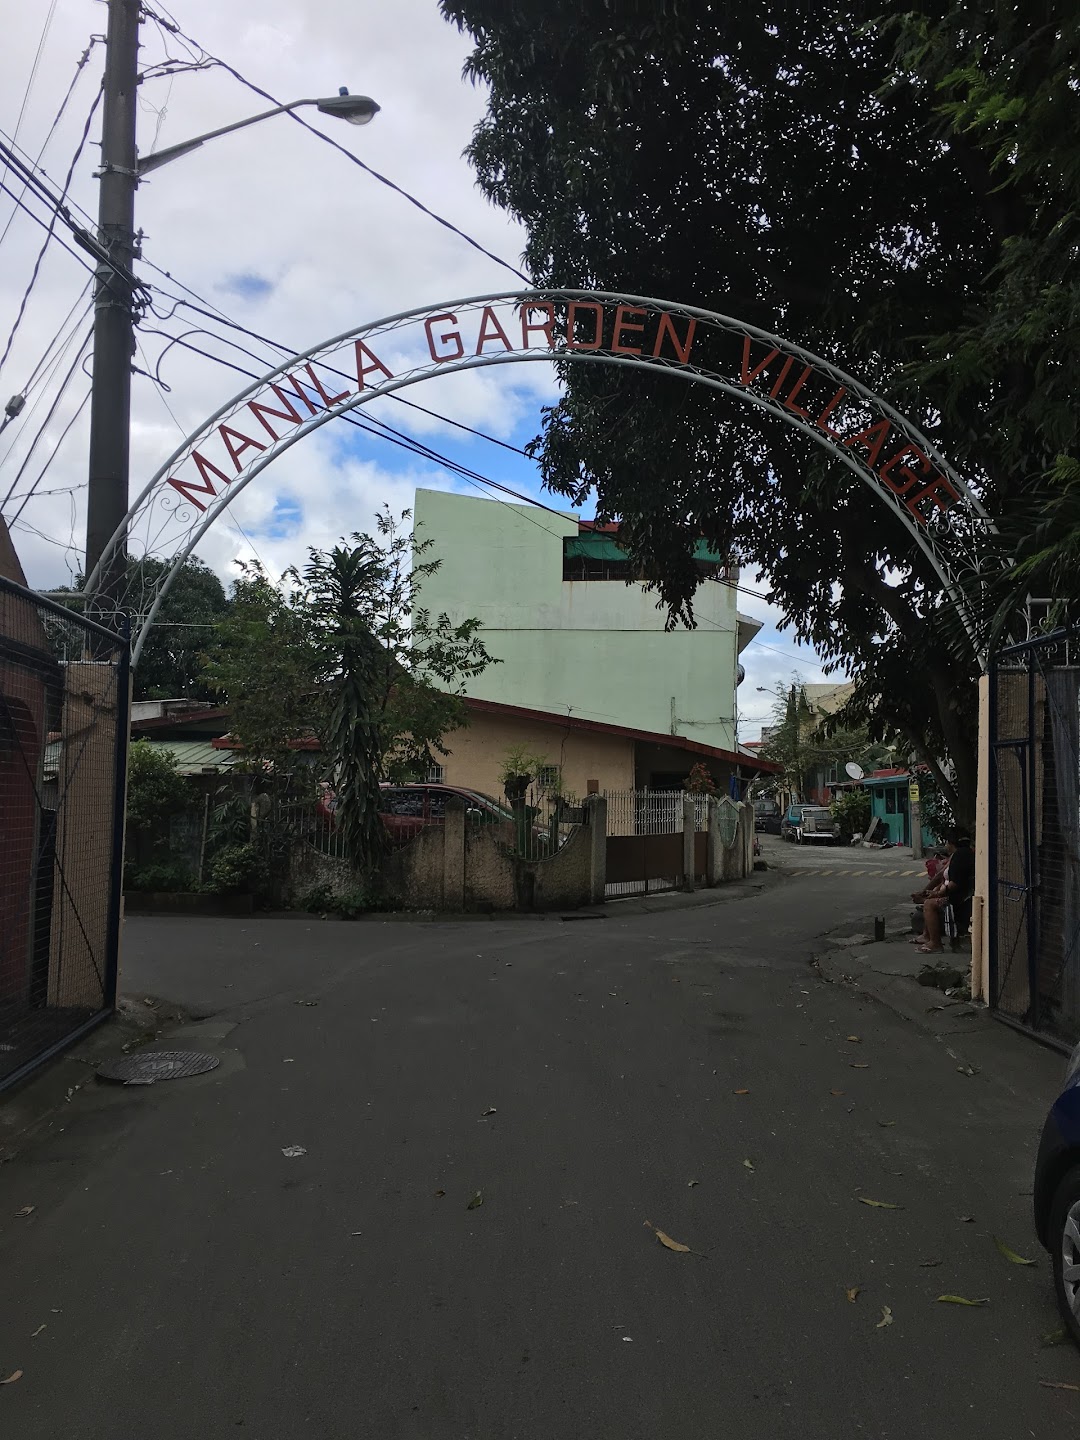 Manila Garden Village